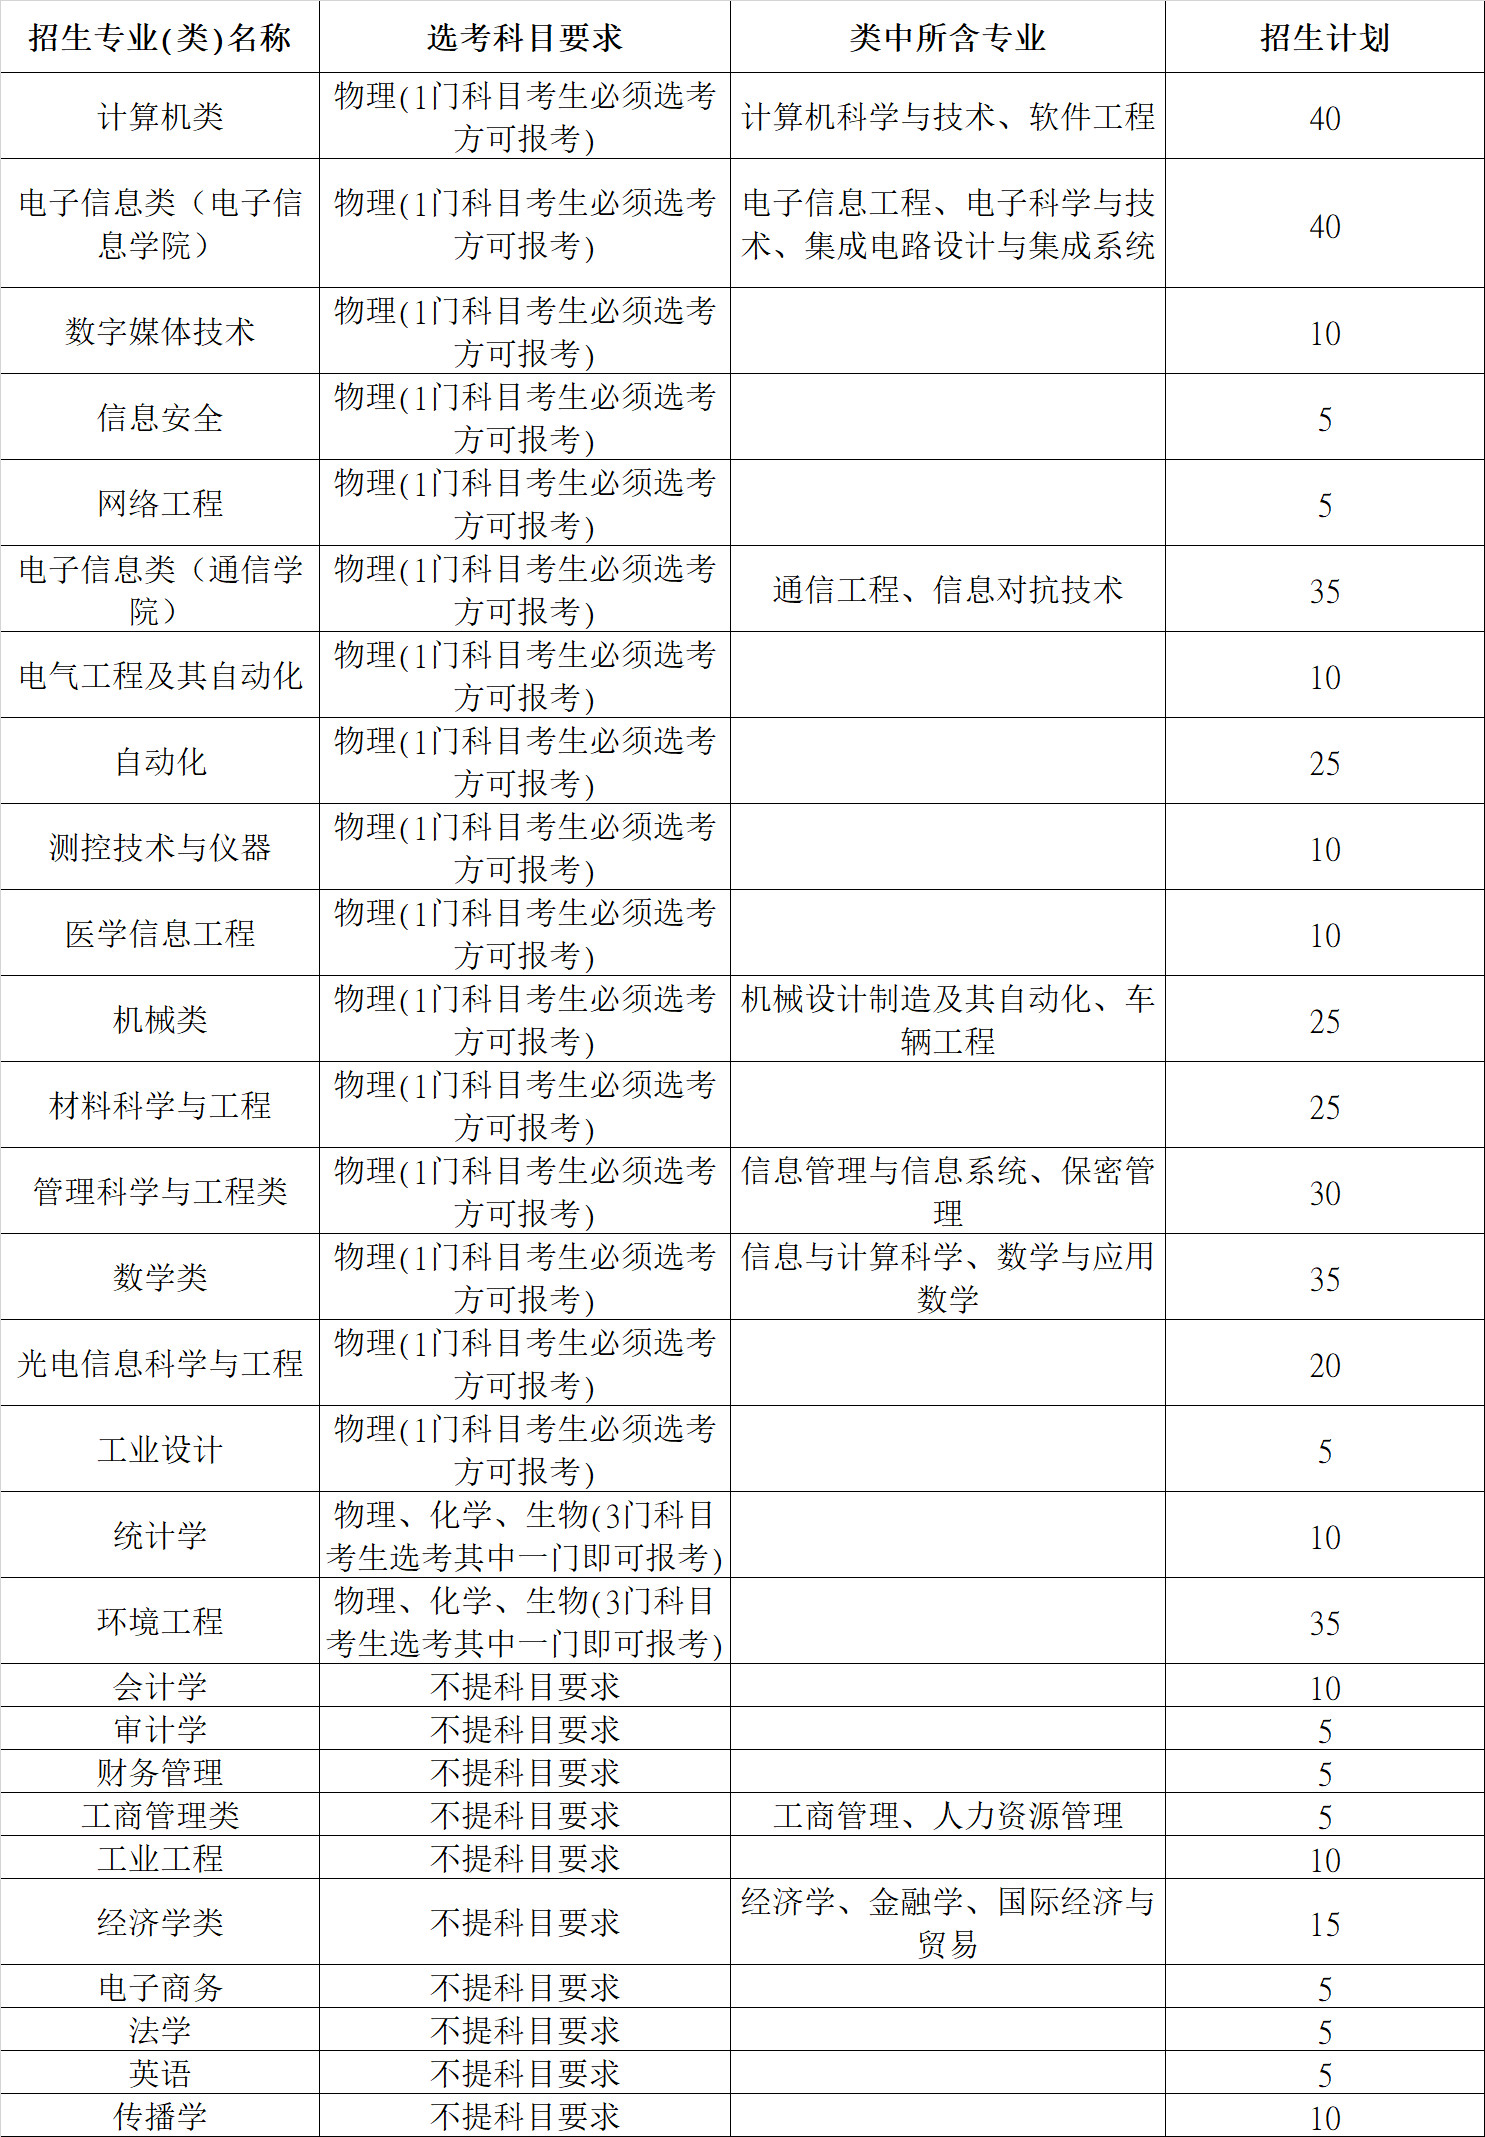 【招生章程】2022年杭州电子科技大学 “三位一体”综合评价招生章程